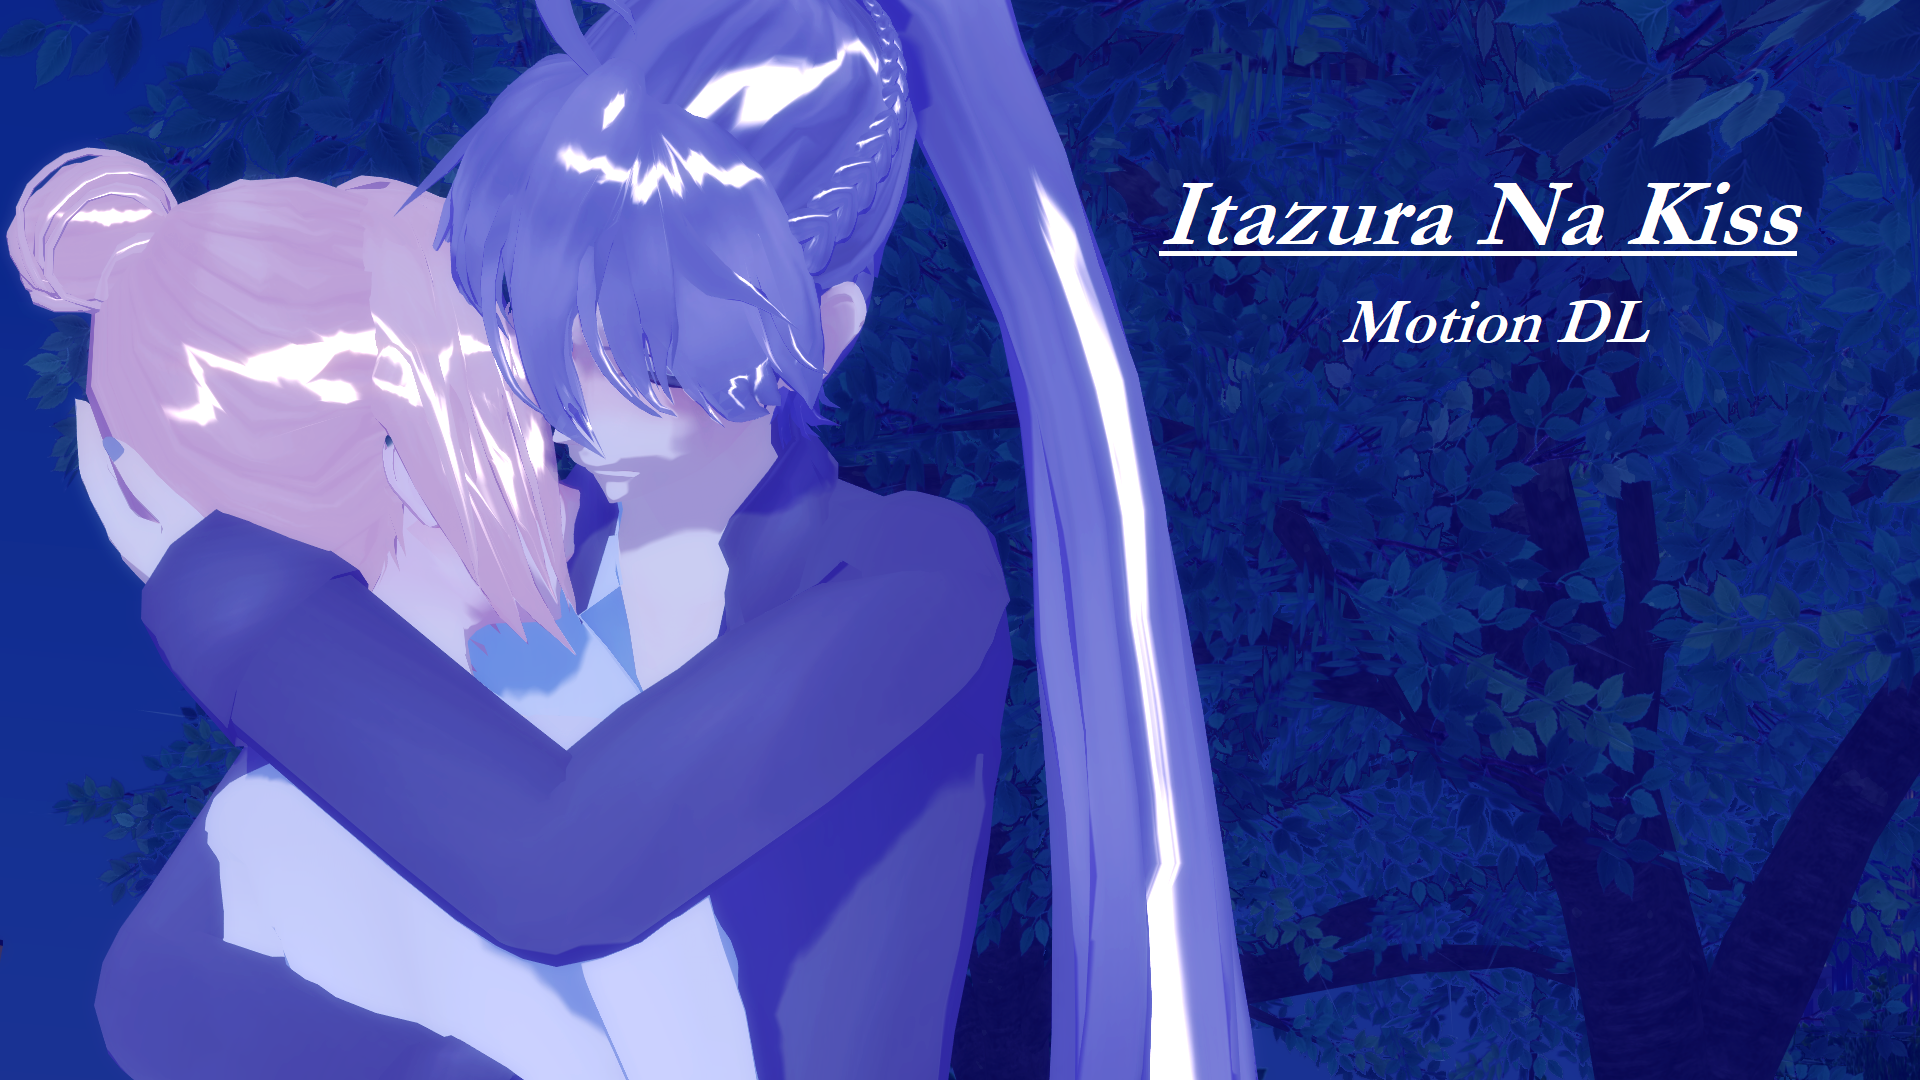 Itazura Na Kiss [MOTION DL] by DarkMoonMMD on DeviantArt